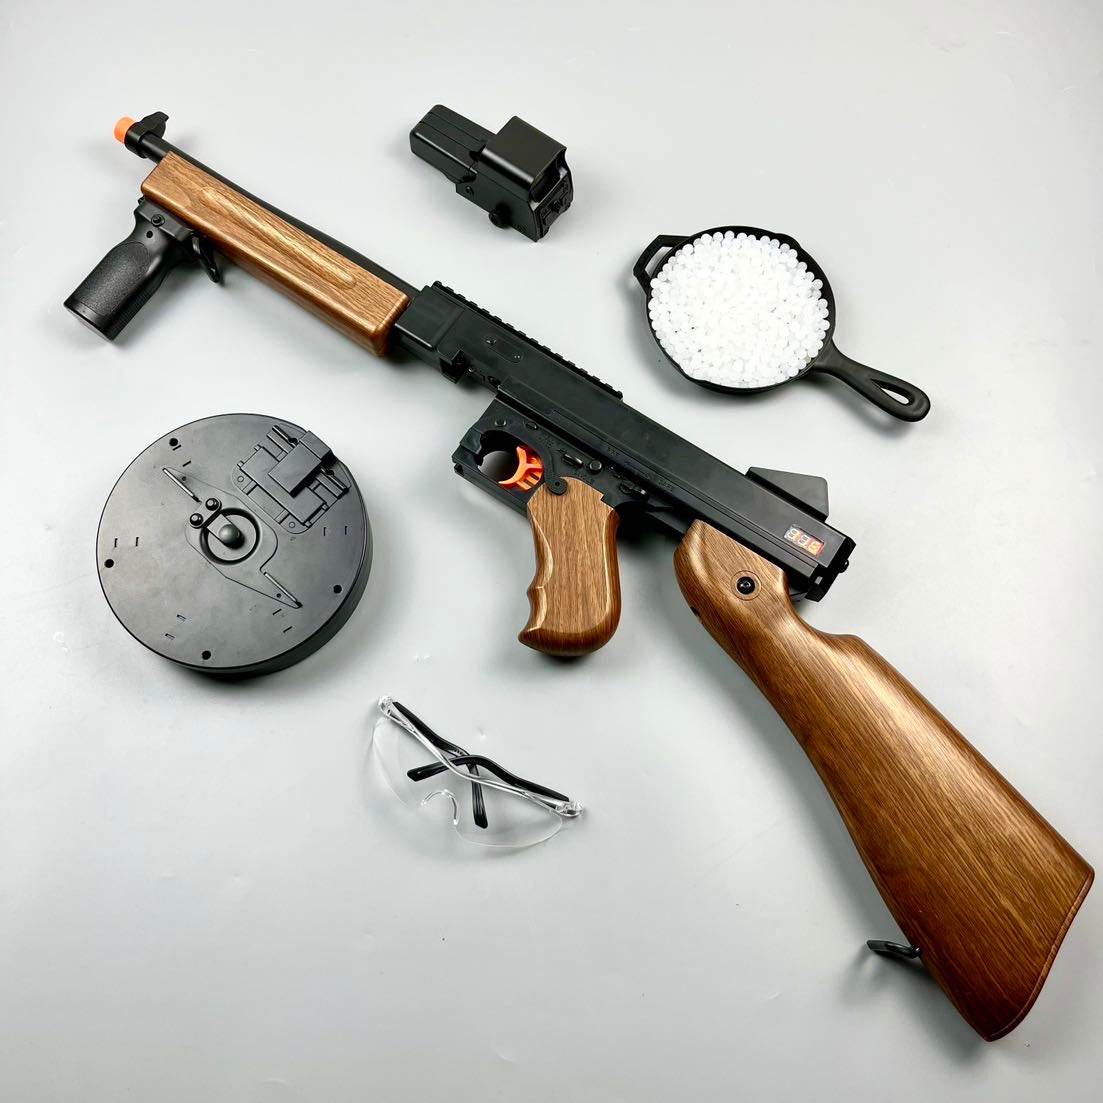 New Thomson Submachine Toy Gun Gel blaster - BOOST TOYS